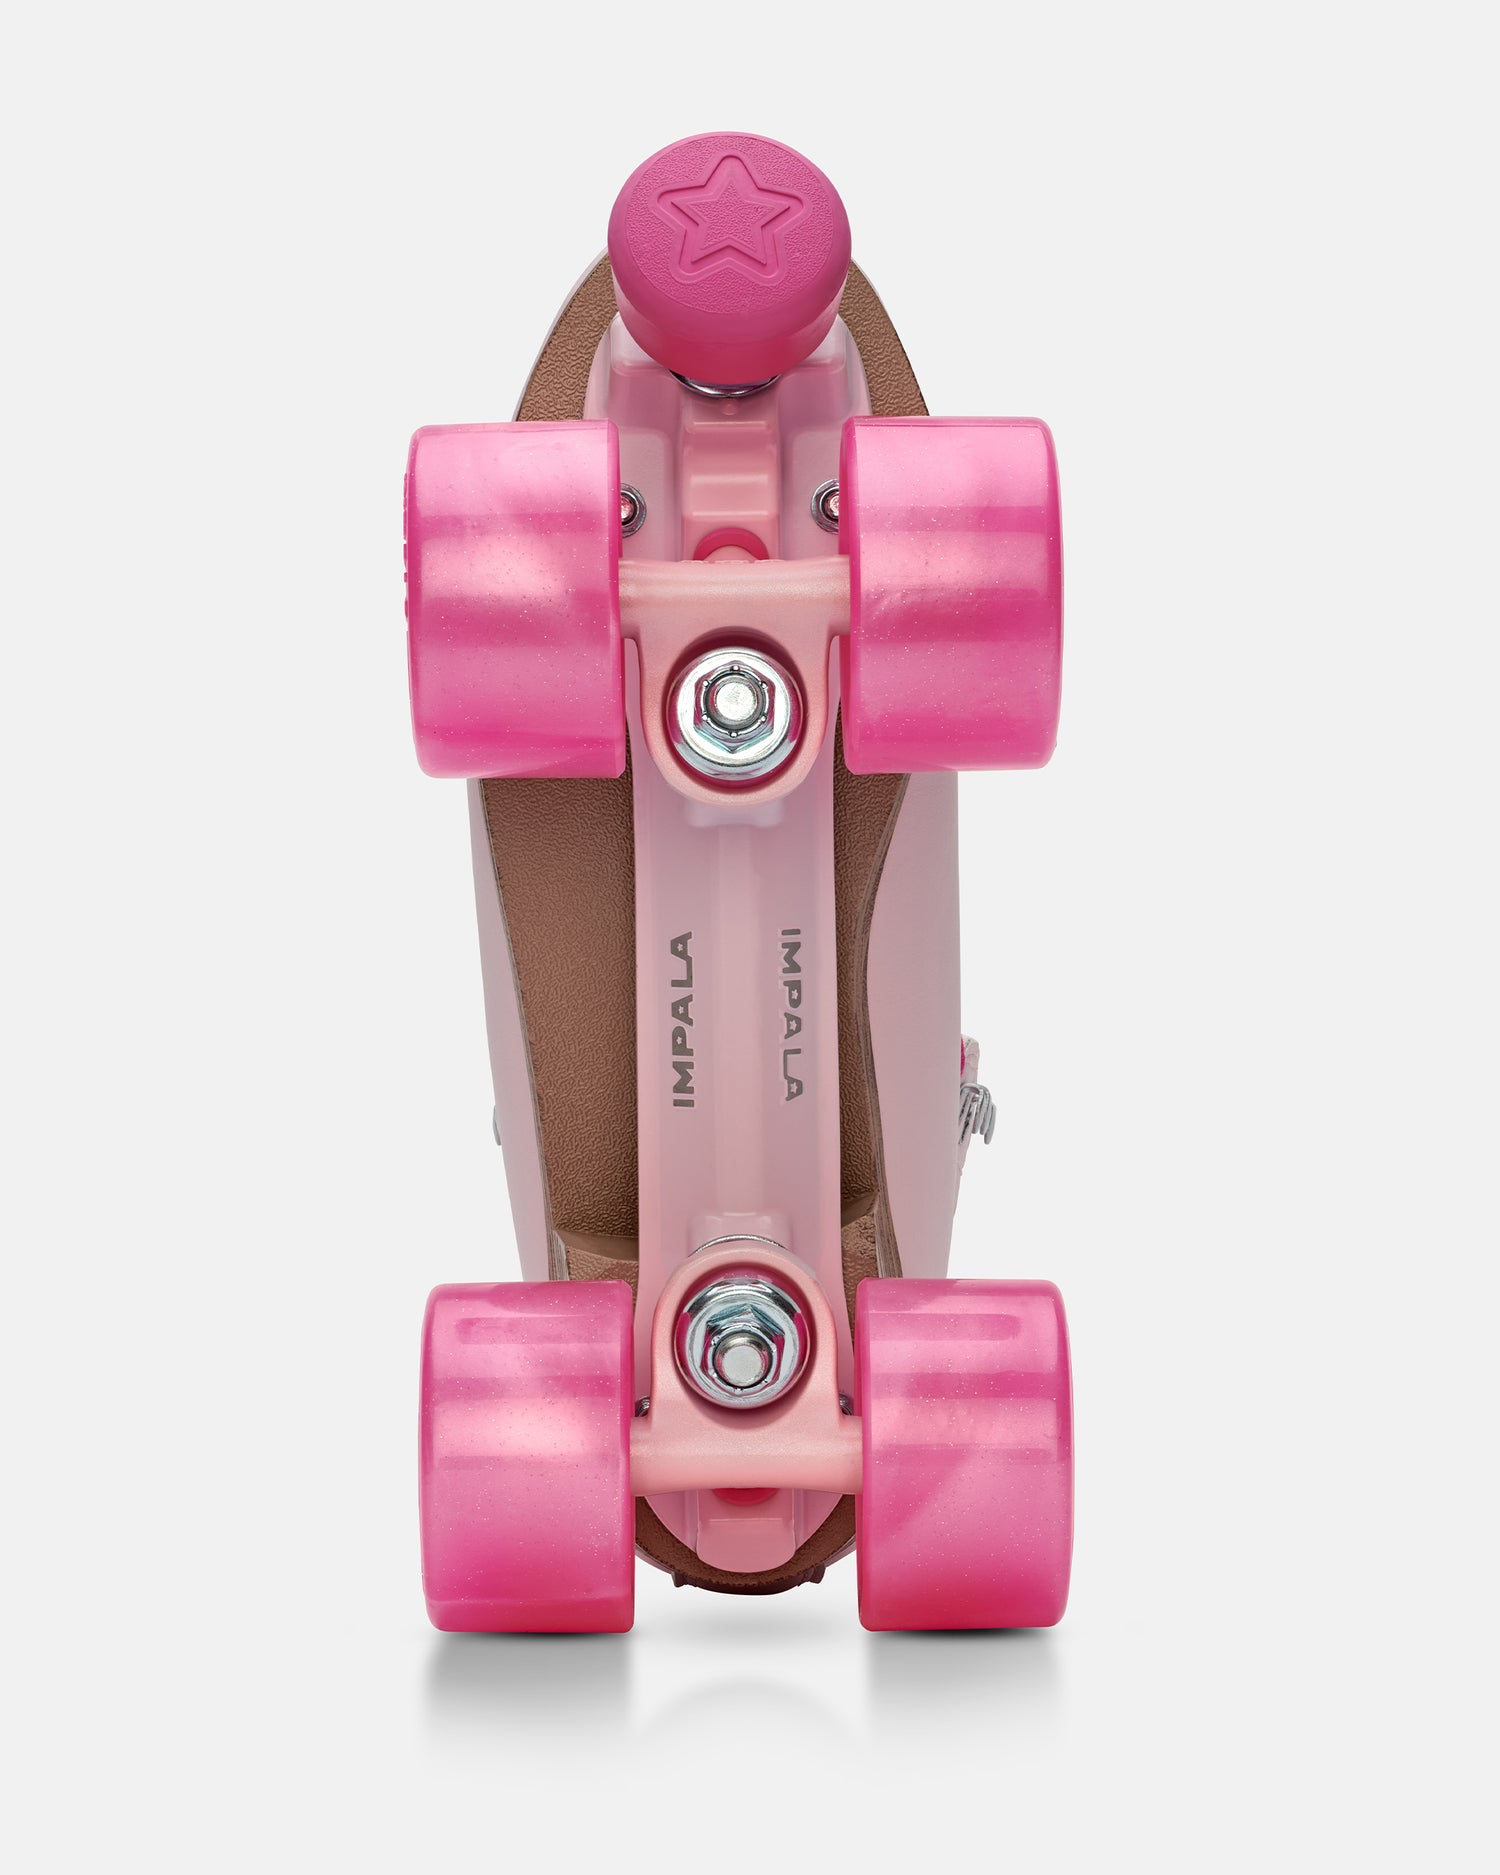 Impala Samira Quad Skate - Wild Pink